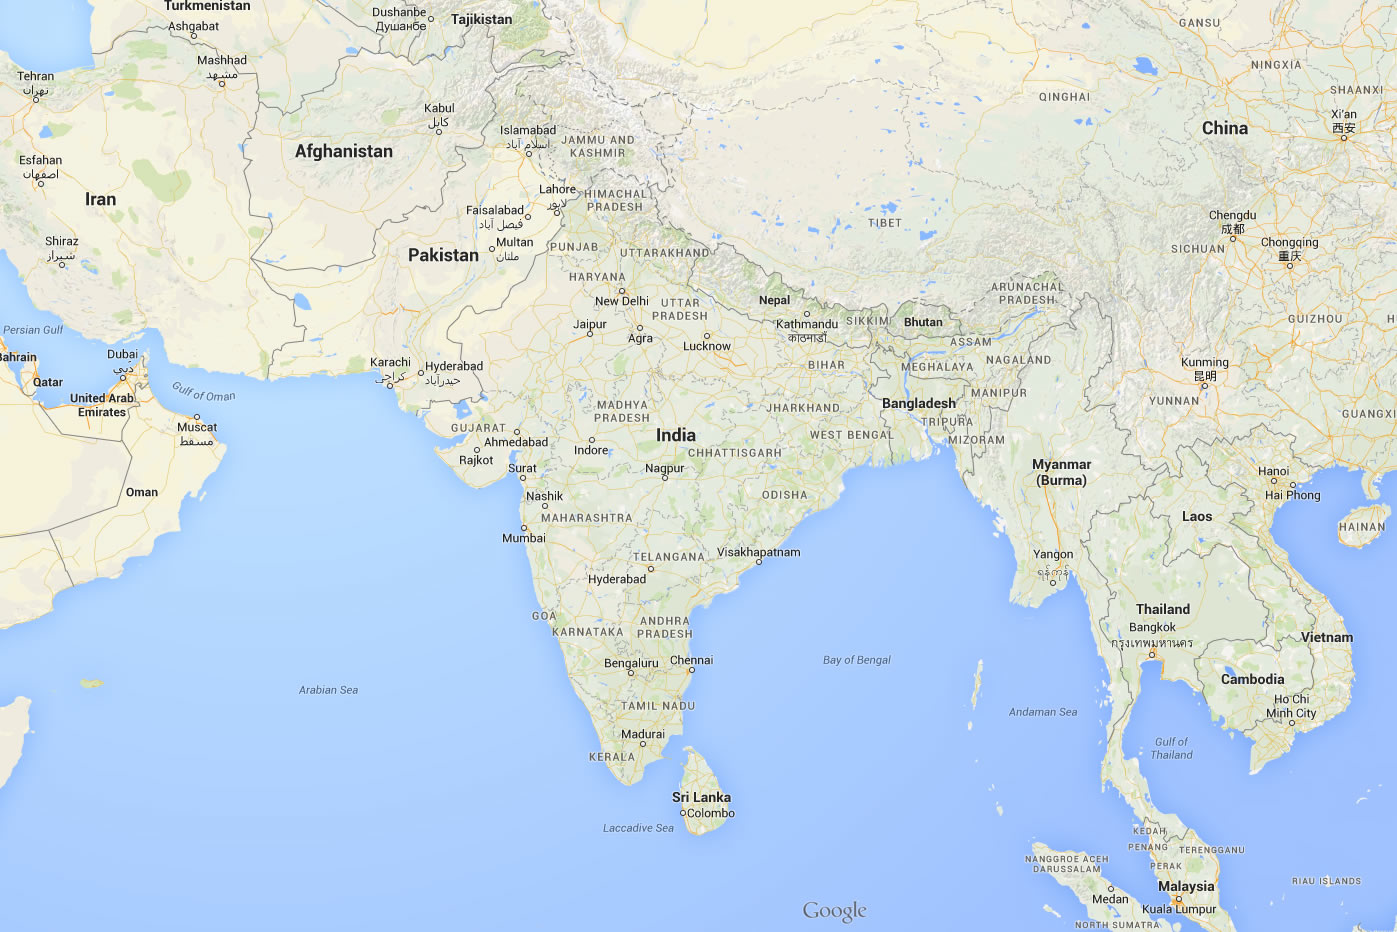 Indien Karte